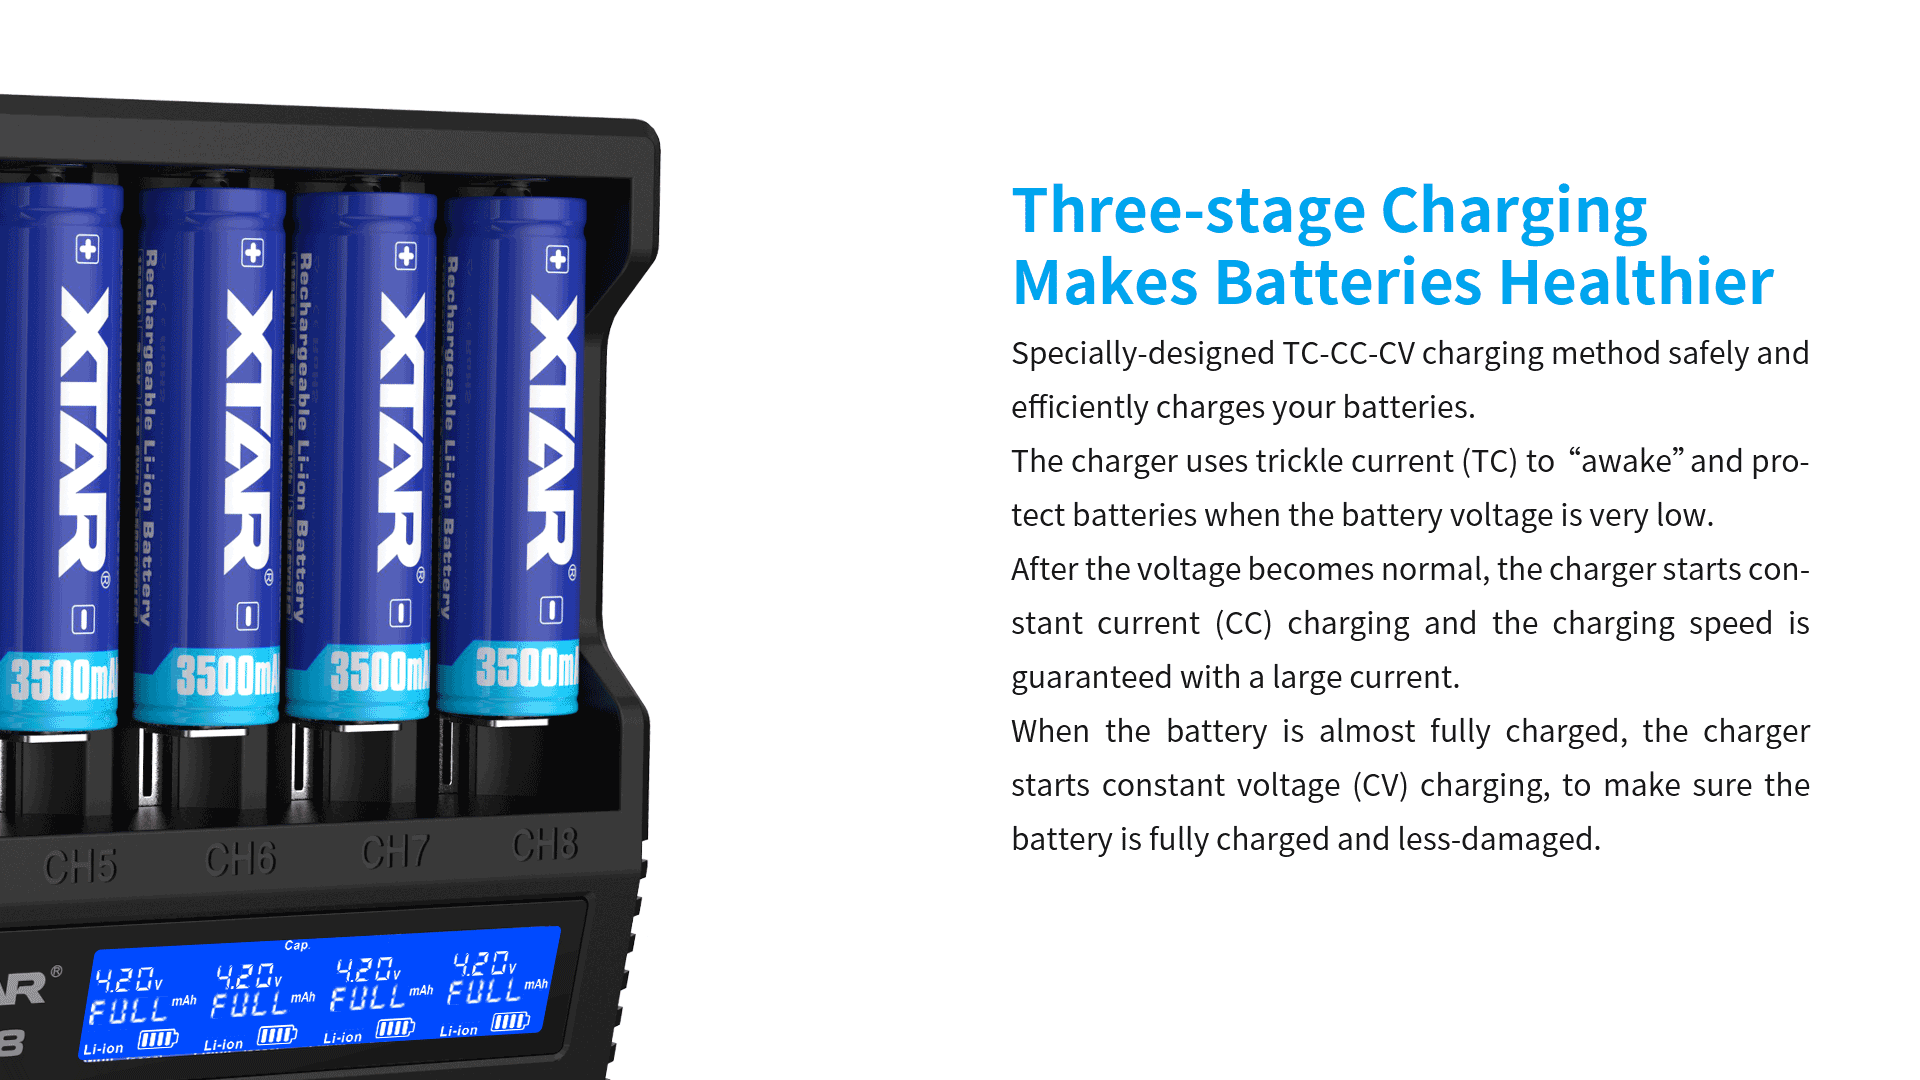 Trzy fazy ładowania akumulatorów w ładowarce VC8 Xtar